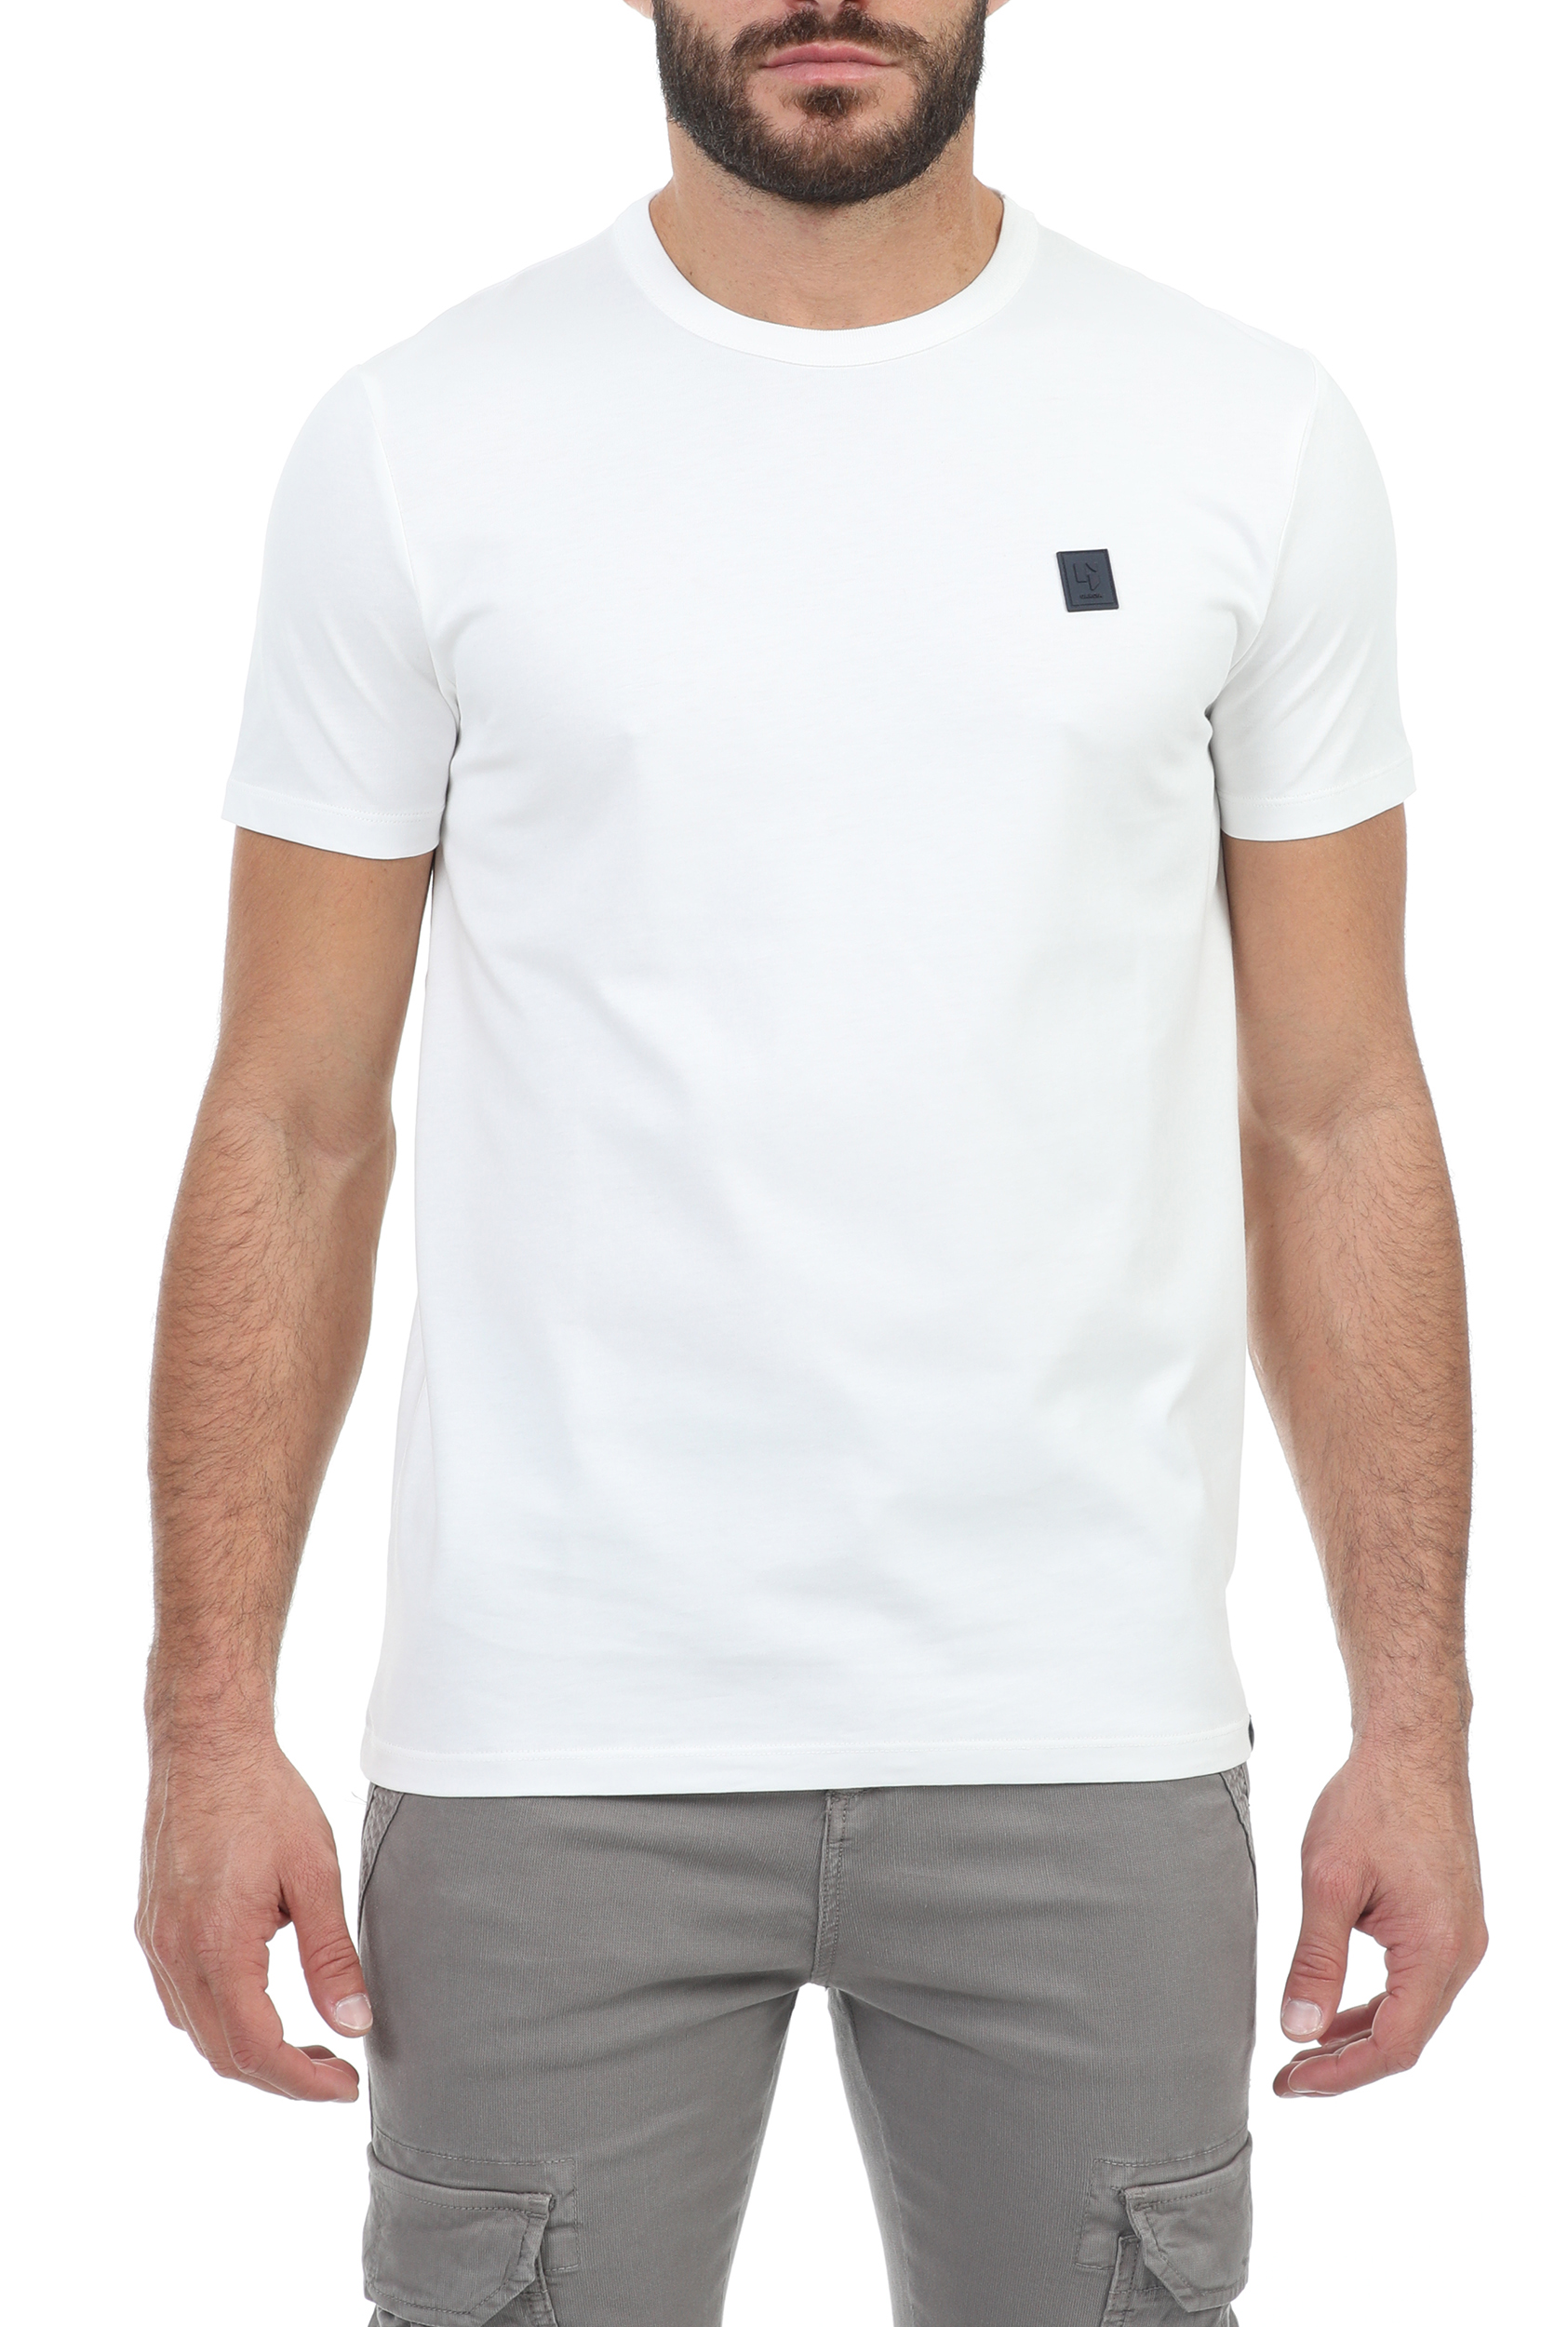 Ανδρικά/Ρούχα/Μπλούζες/Κοντομάνικες GARCIA JEANS - Ανδρικό t-shirt GARCIA JEANS λευκό